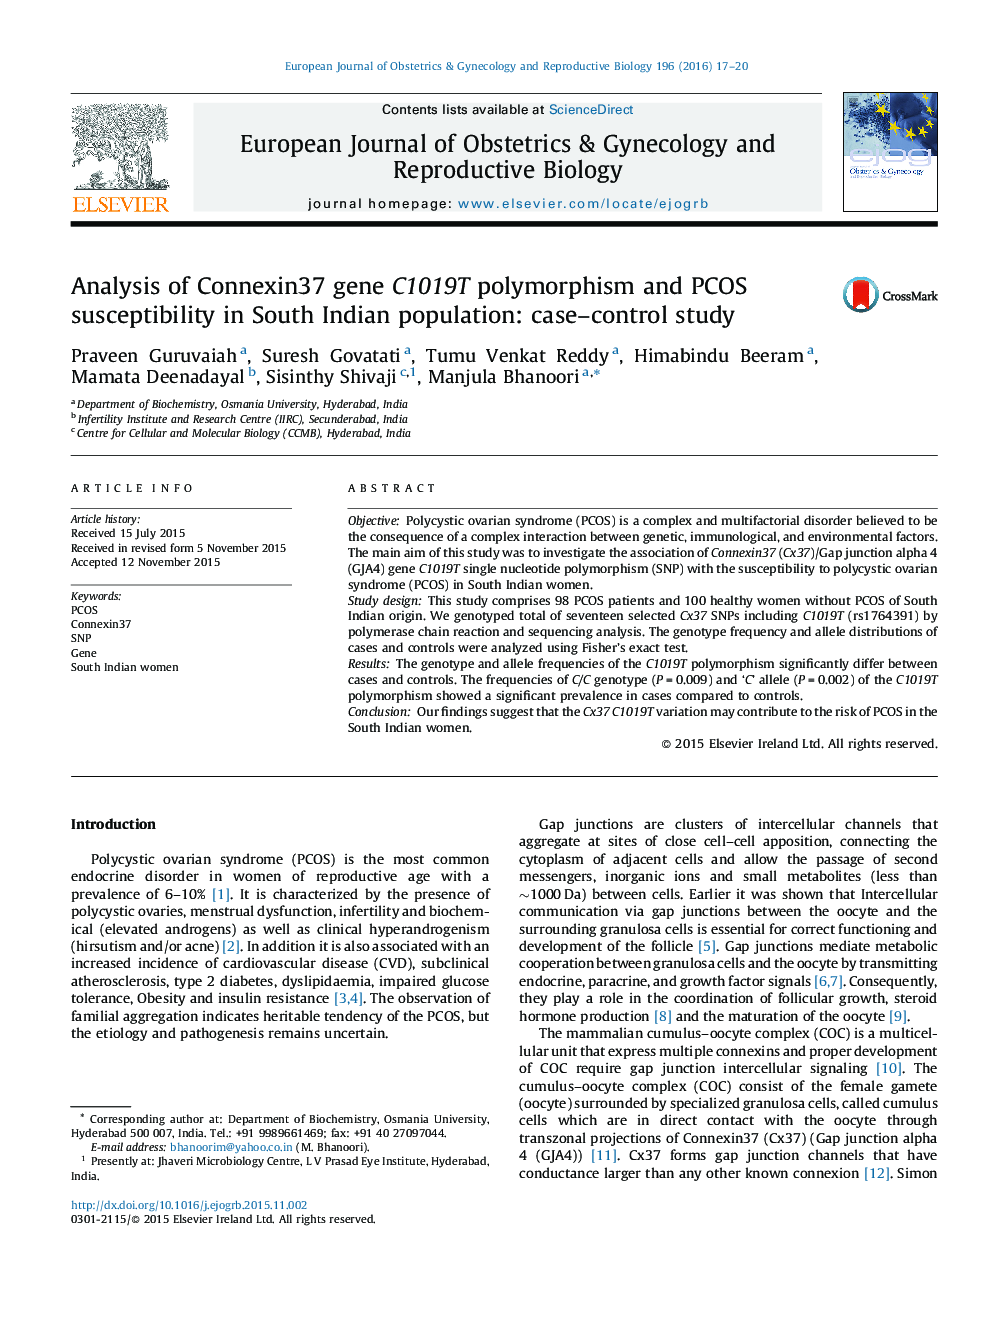 تجزیه و تحلیل پلی مورفیسم ژن Connexin37 C1019T و حساسیت پذیری PCOS در جمعیت هند جنوبی: مطالعه موردی تحت کنترل